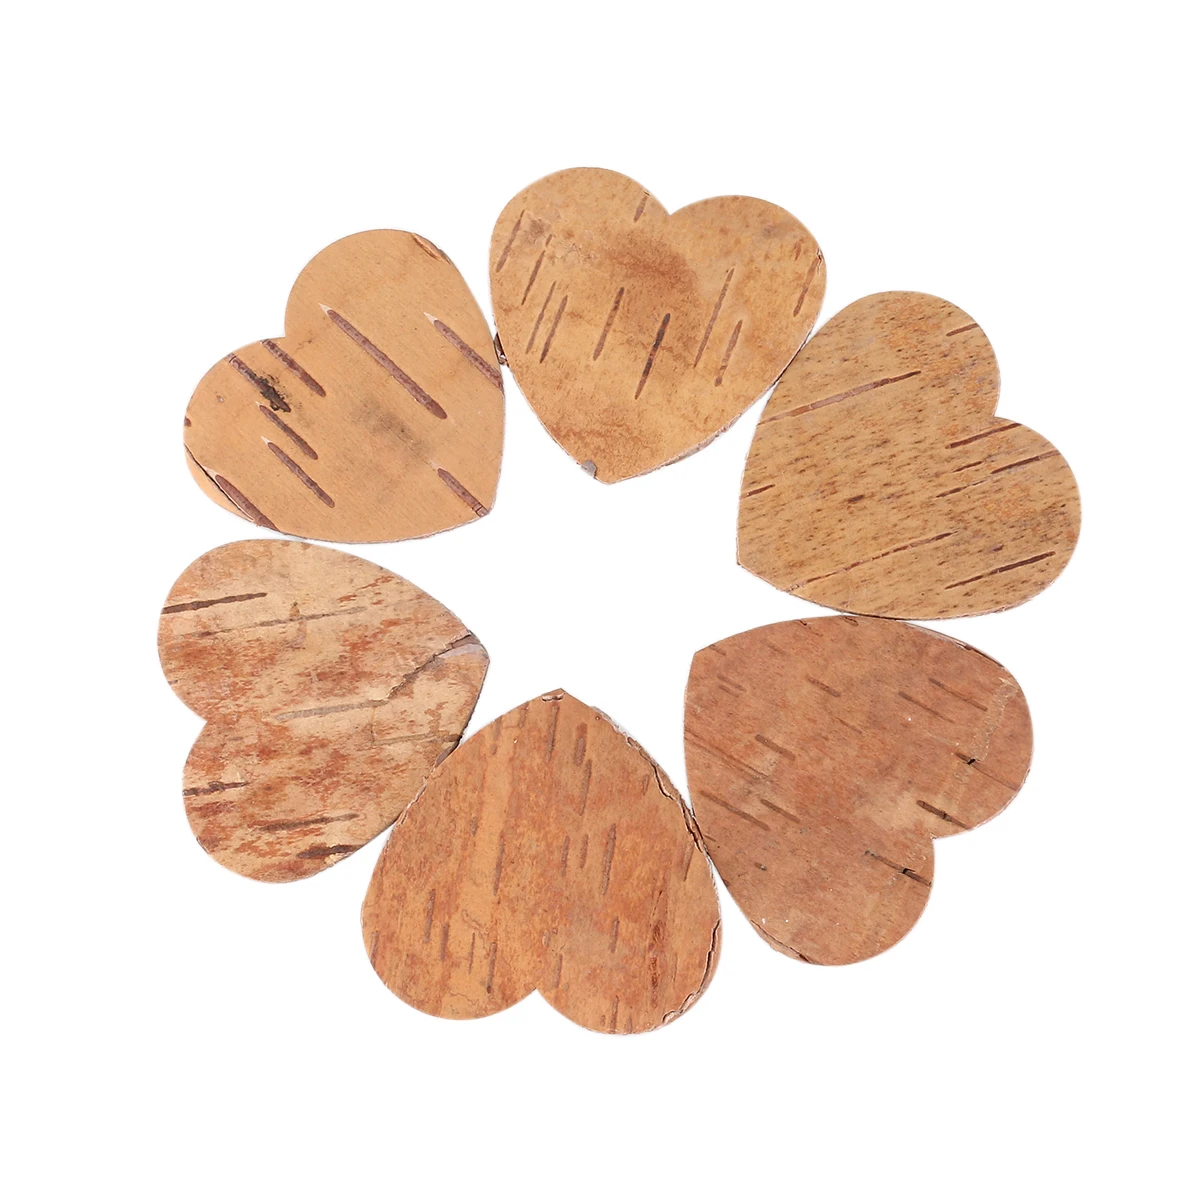 8 X hojas de Corteza de Abedul árbol Rústico De Novia Boda lugar Decorativo formas Crafts 